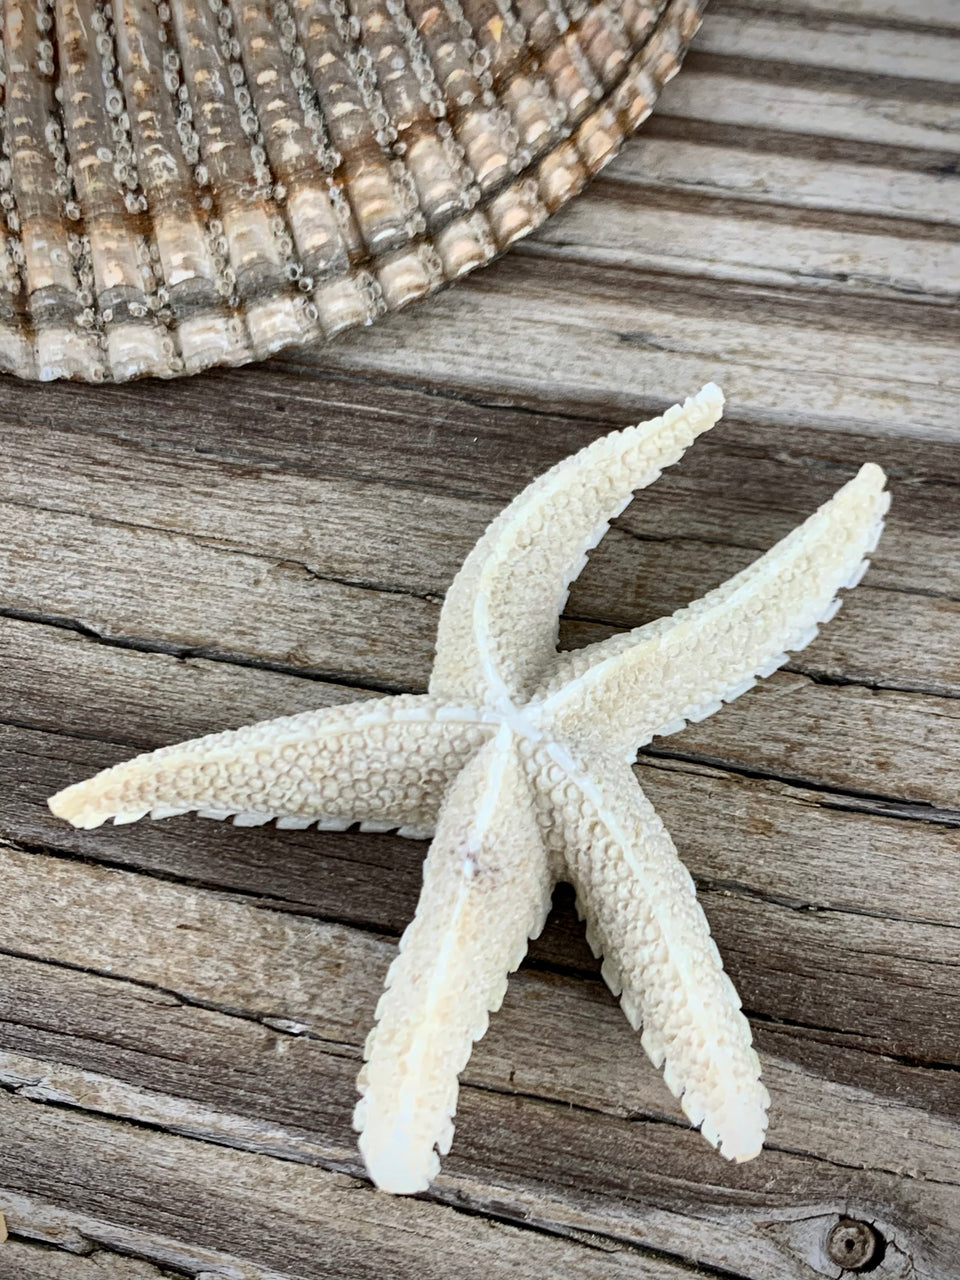 Antler Starfish Carving